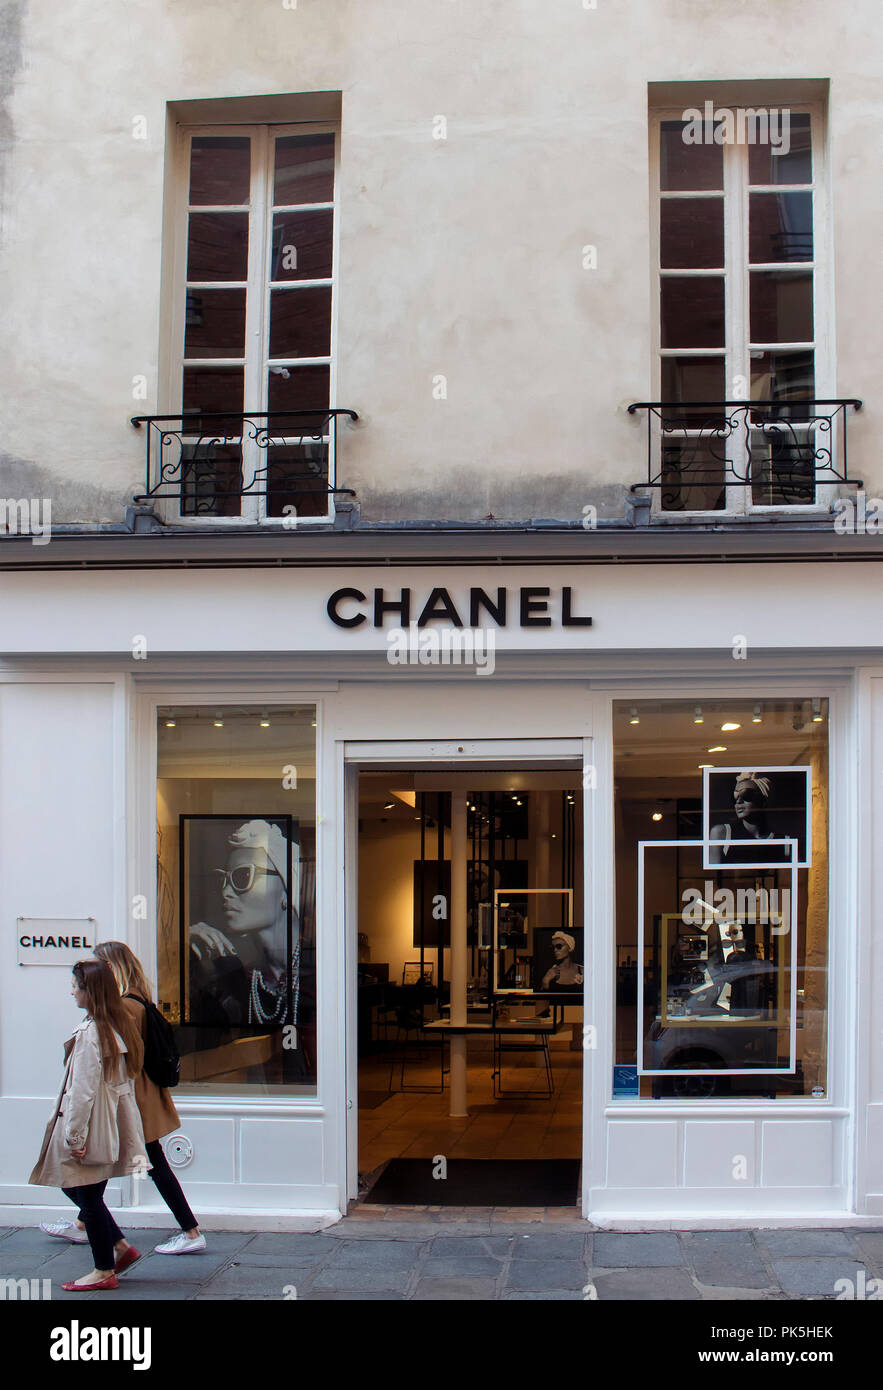 Chanel's Luxury Pop-Up Store in Saint-Tropez